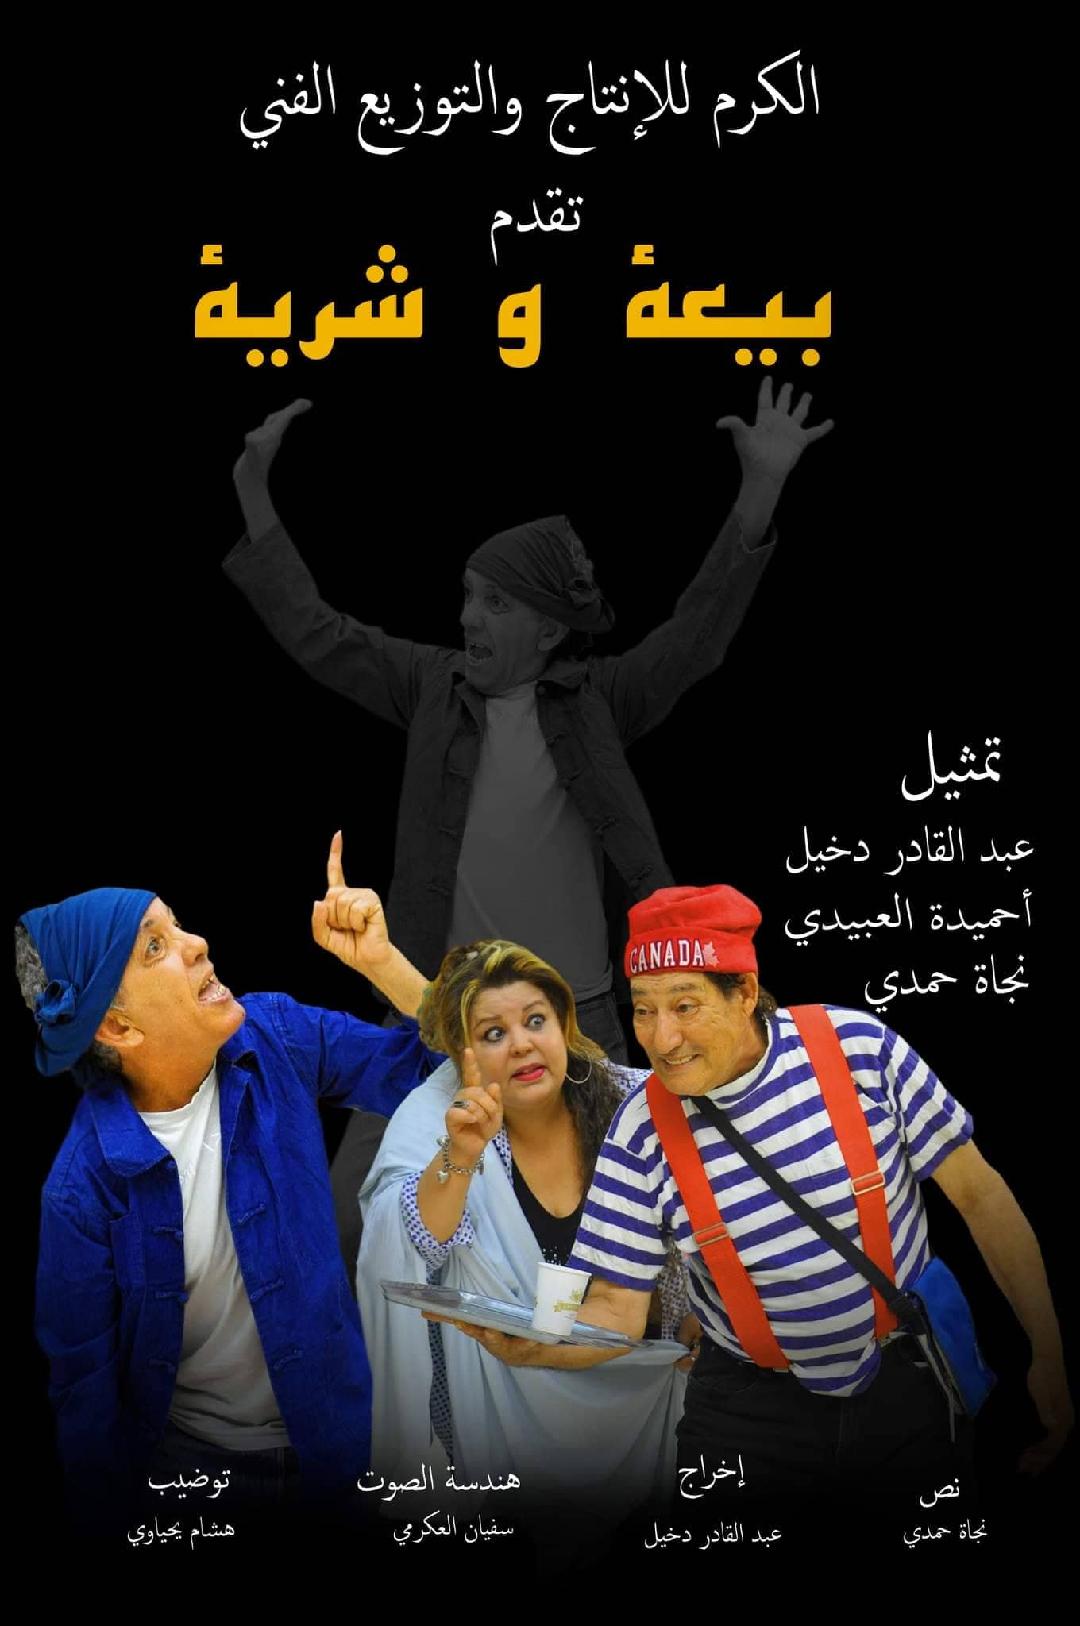 عبدالقادر دخيل لـ"الصباح نيوز": مسرحية "بيعة شرية" كوميديا الواقع بتناقضاته ومساحة للضحك الهادف